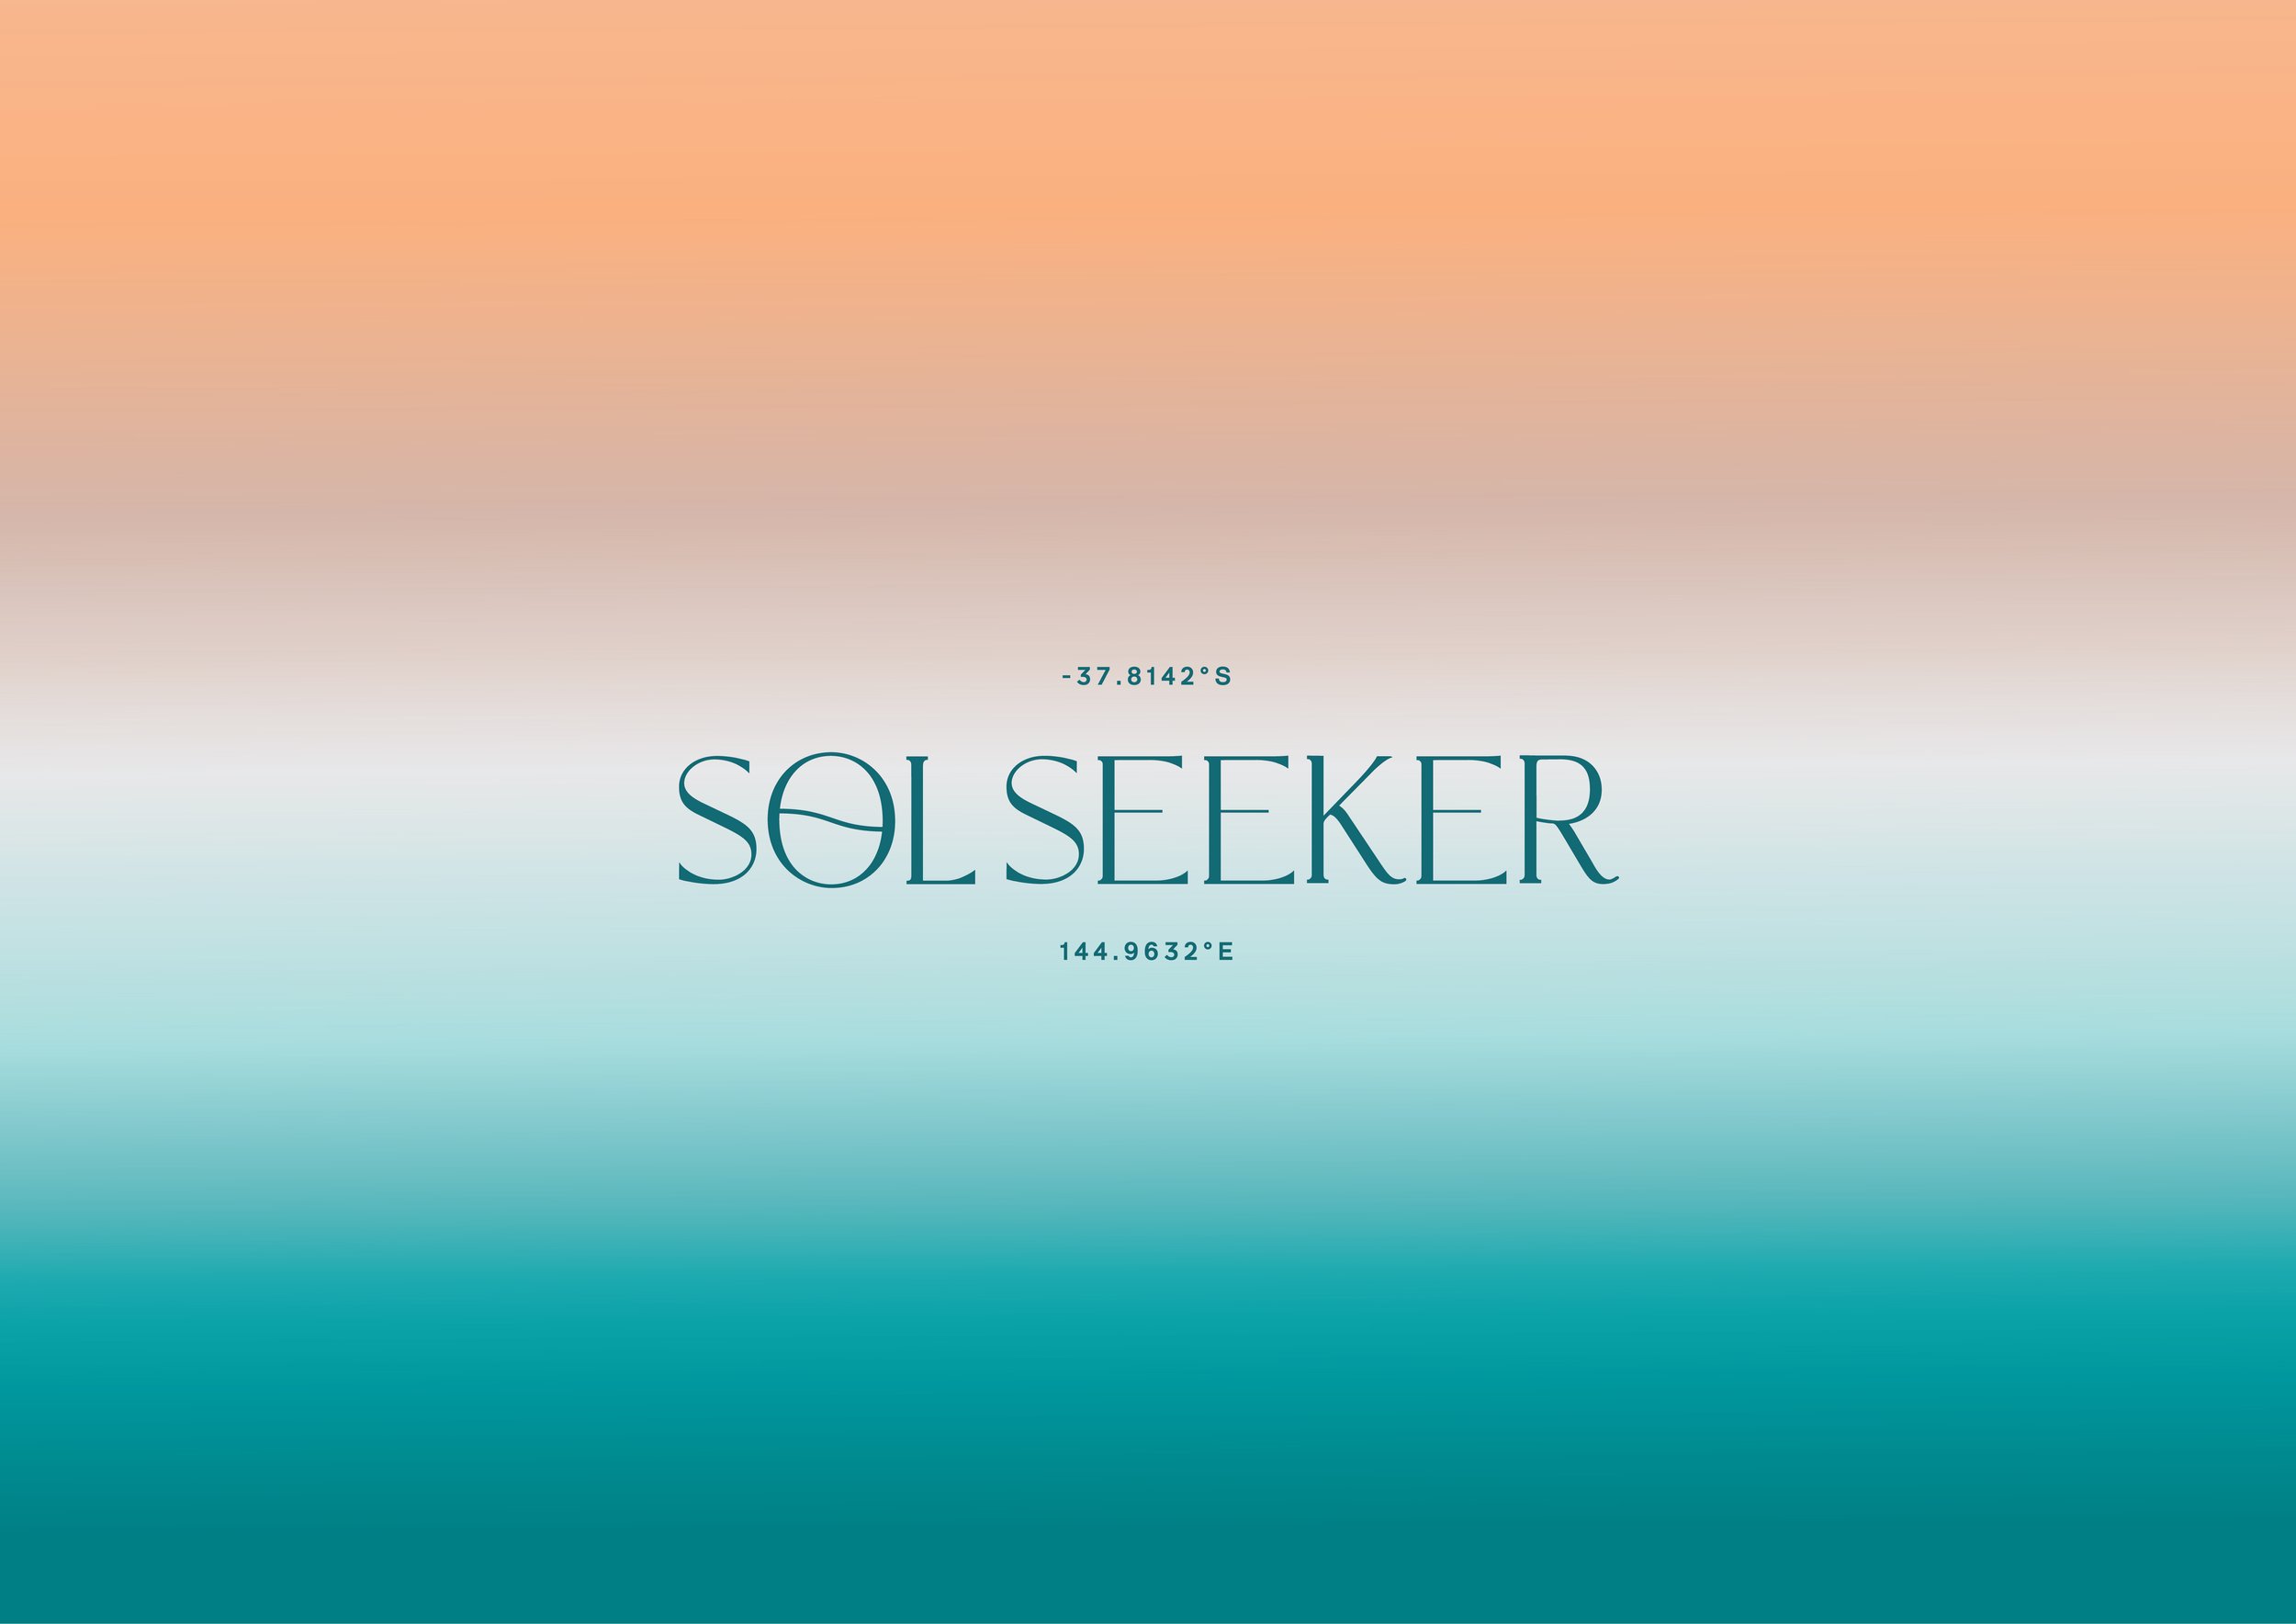 SolSeeker Web Images-01.jpg